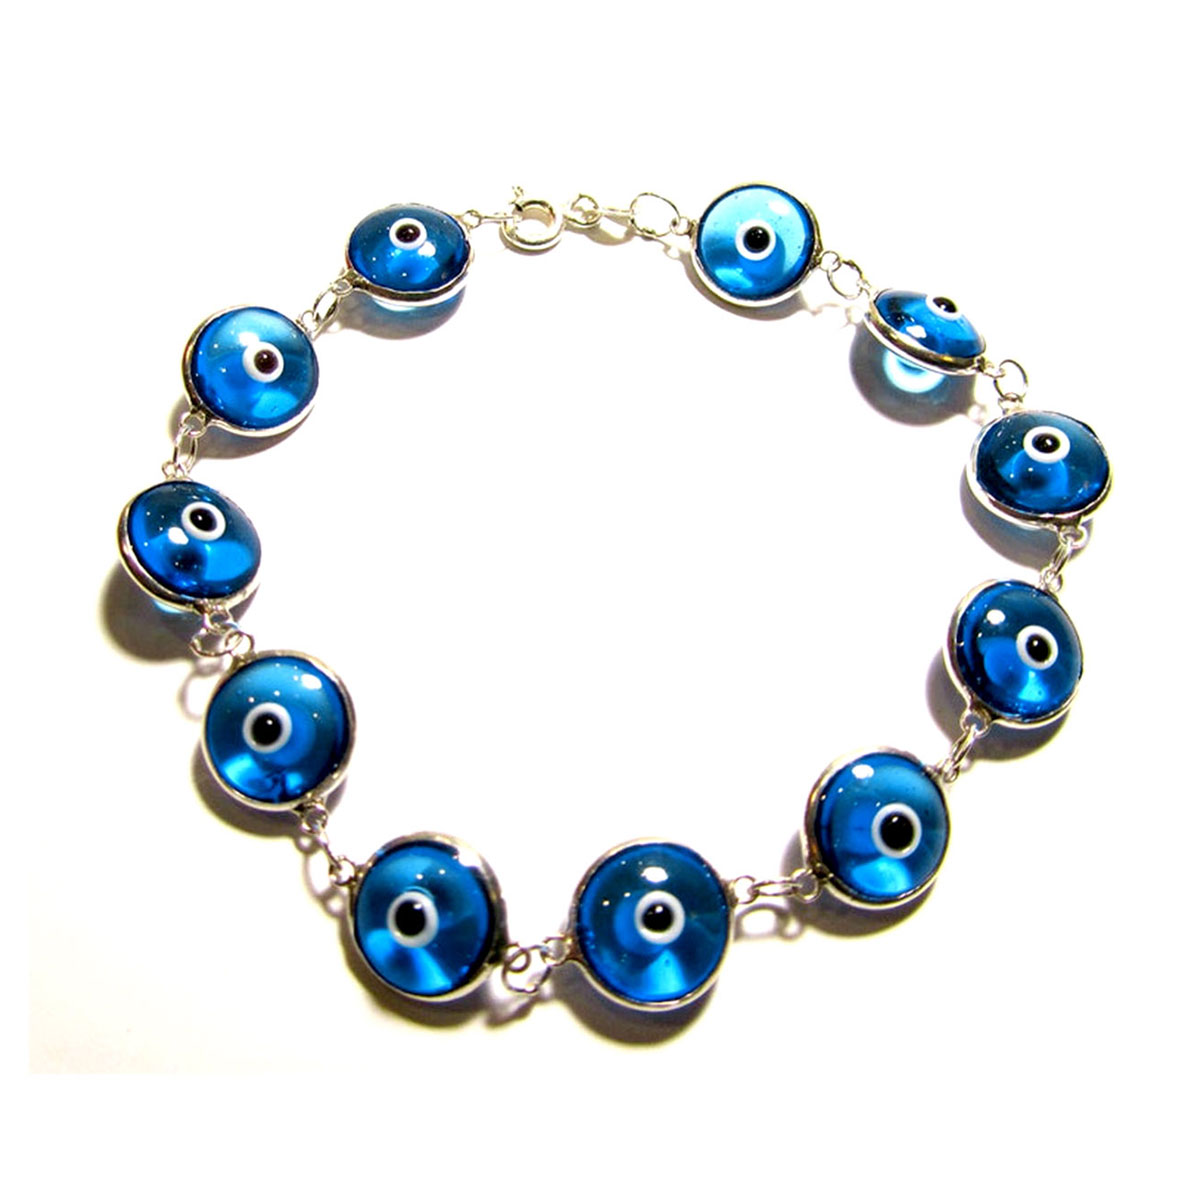 Kalypso Evil Eye Bracelet - Small — Hellenic Aesthetic